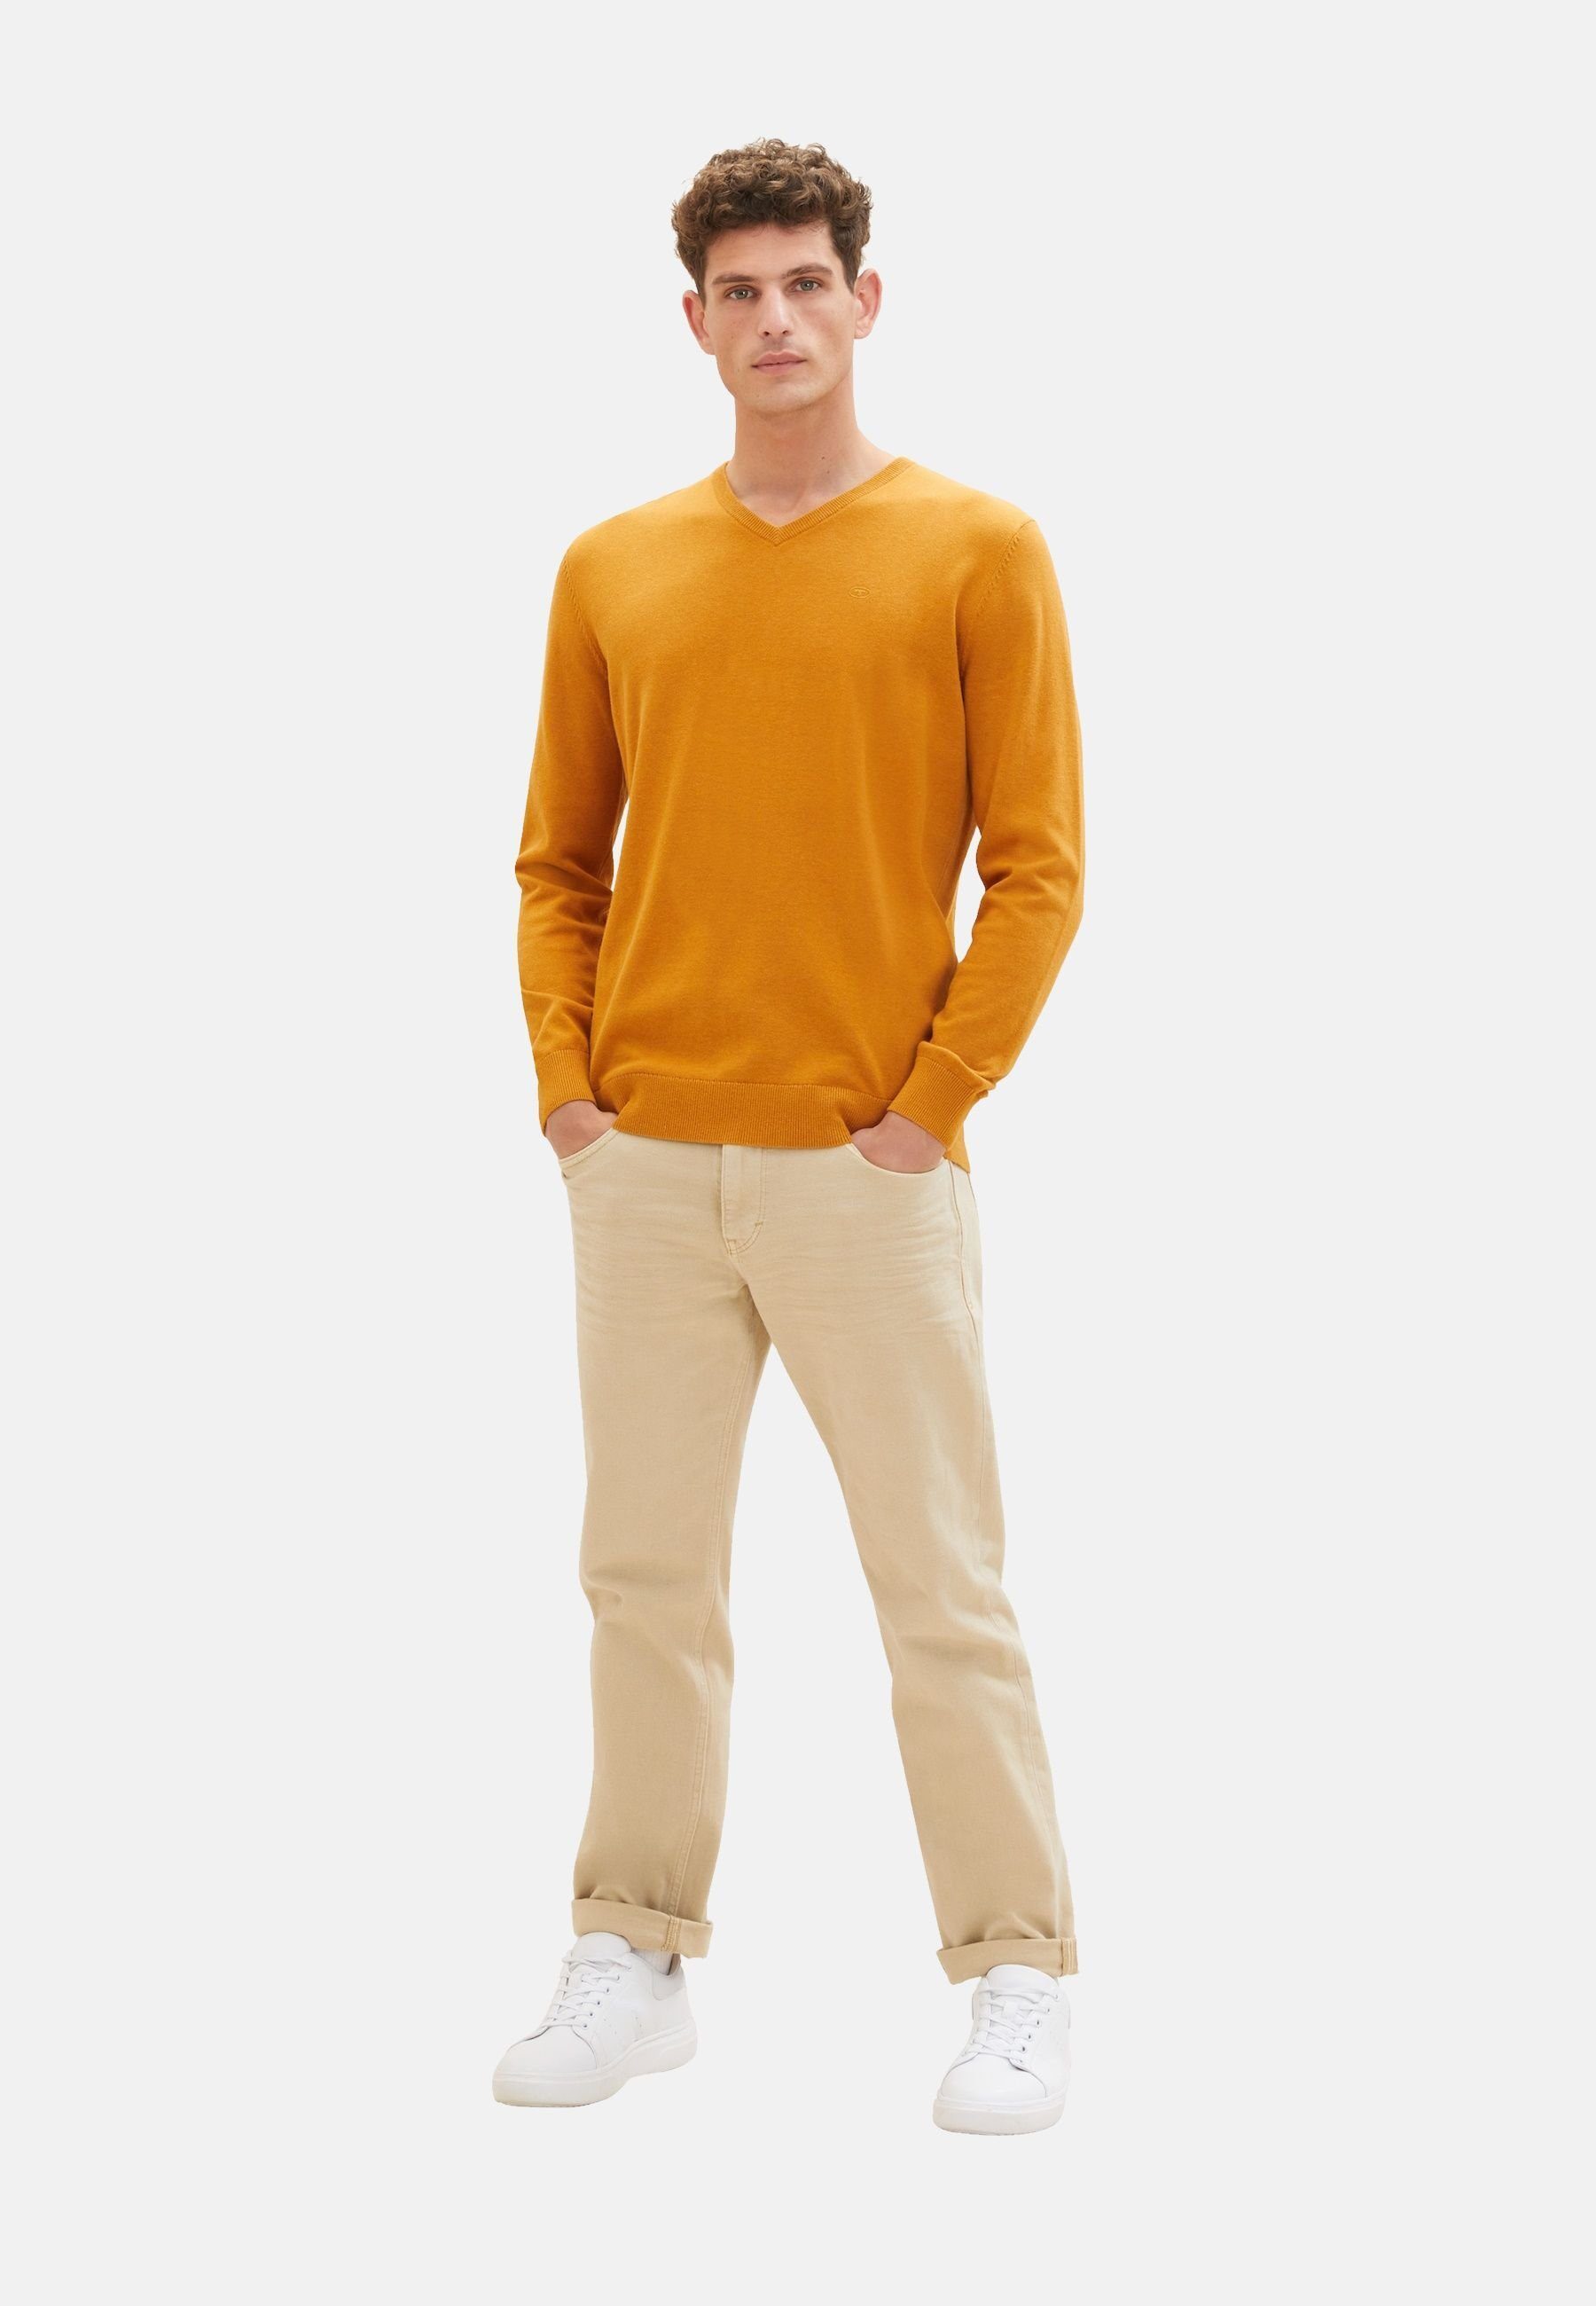 Pullover Sweatshirt TAILOR Sweatshirt orange meliert Rippbündchen (1-tlg) TOM mit